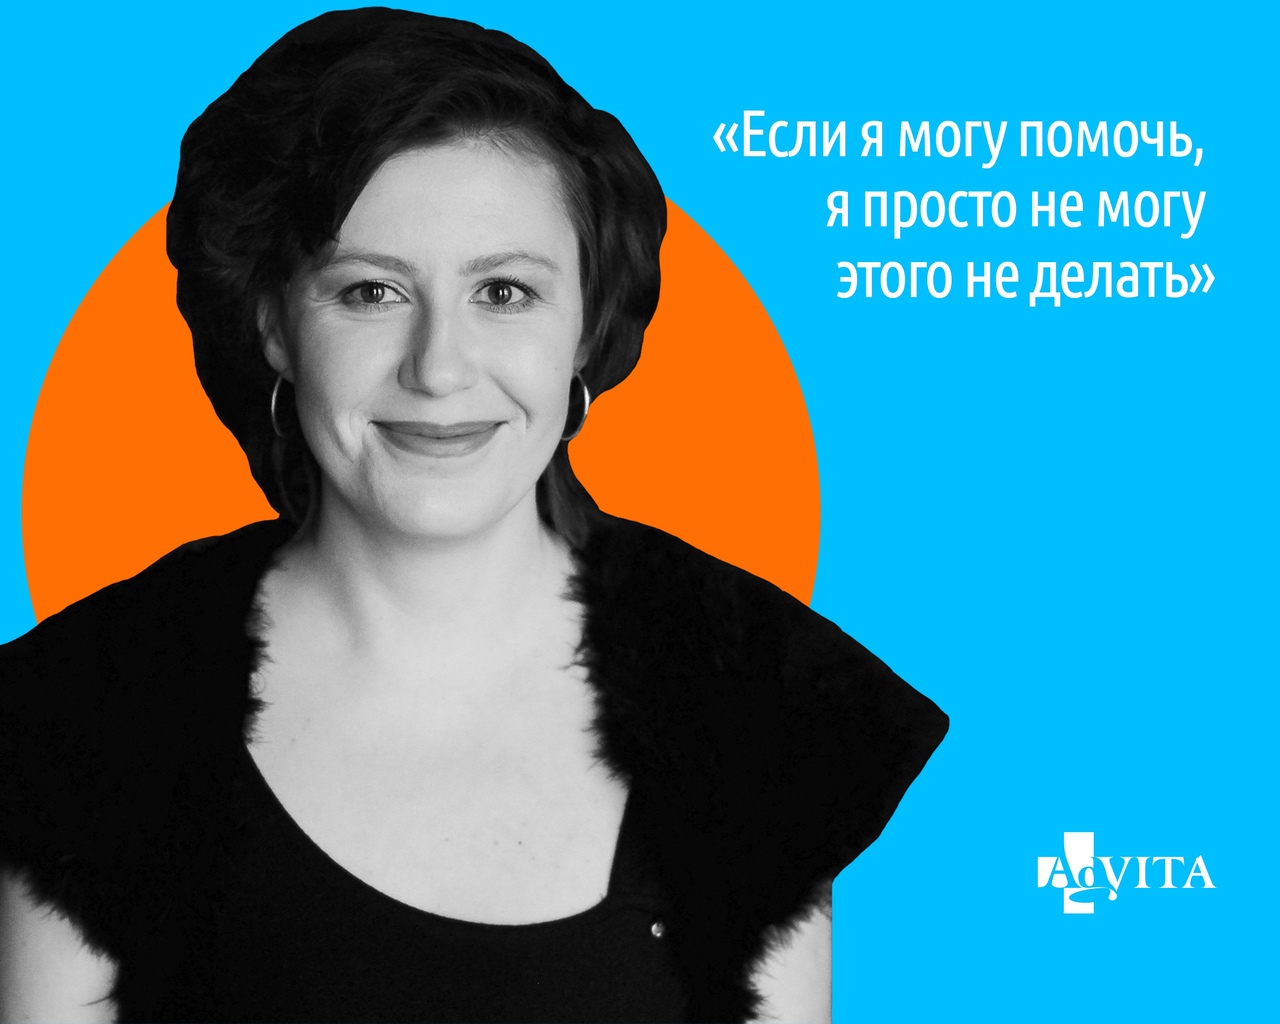 Волонтерка AdVita придумала бота с аудиоэкскурсиями по Петербургу. Она умерла из-за коронавируса, и проект запустили ее близкие